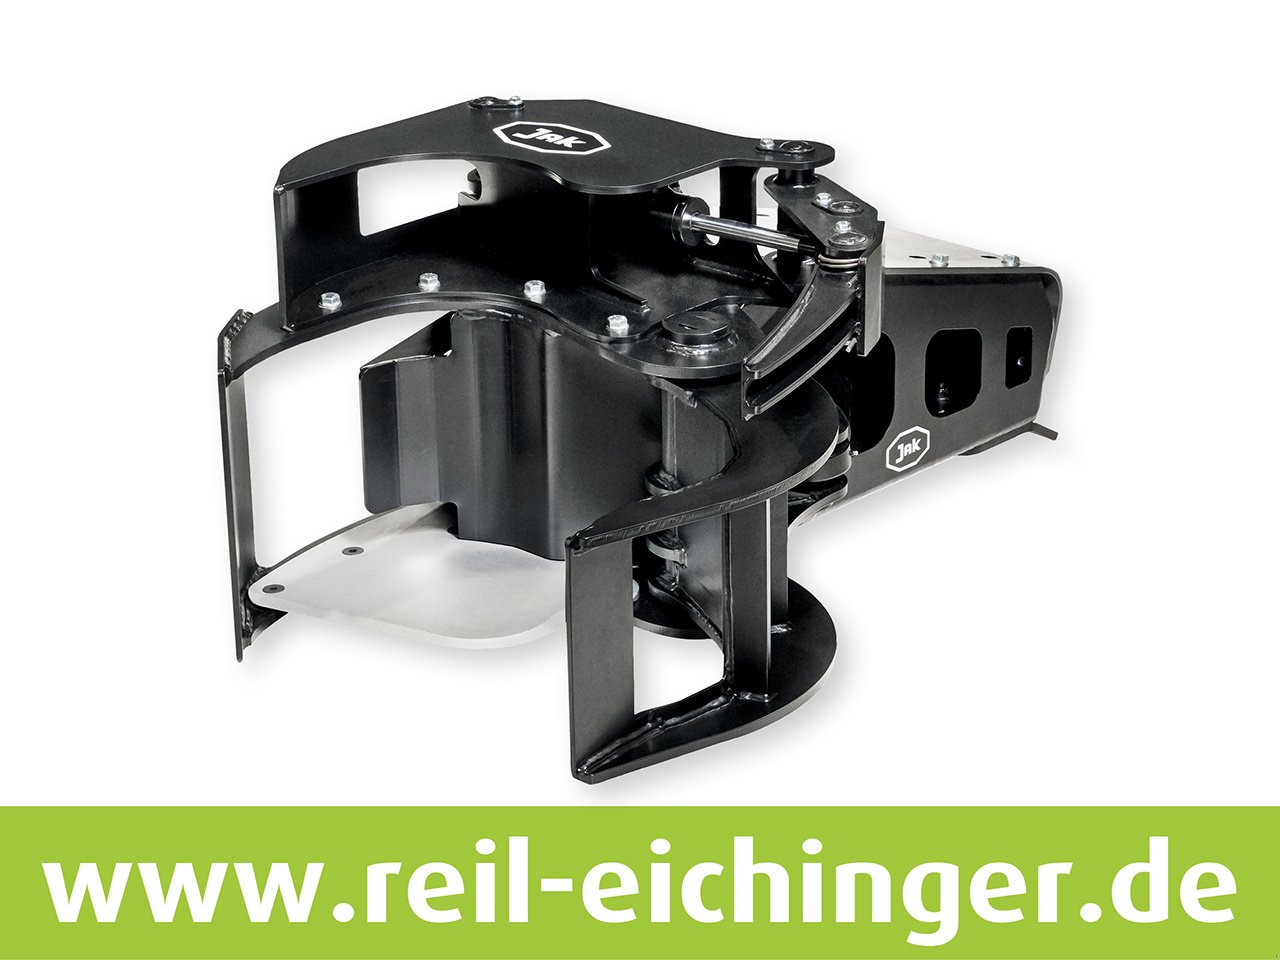 Aggregat & Anbauprozessor des Typs Reil & Eichinger Fällgreifer JAK 400 C, Neumaschine in Nittenau (Bild 1)